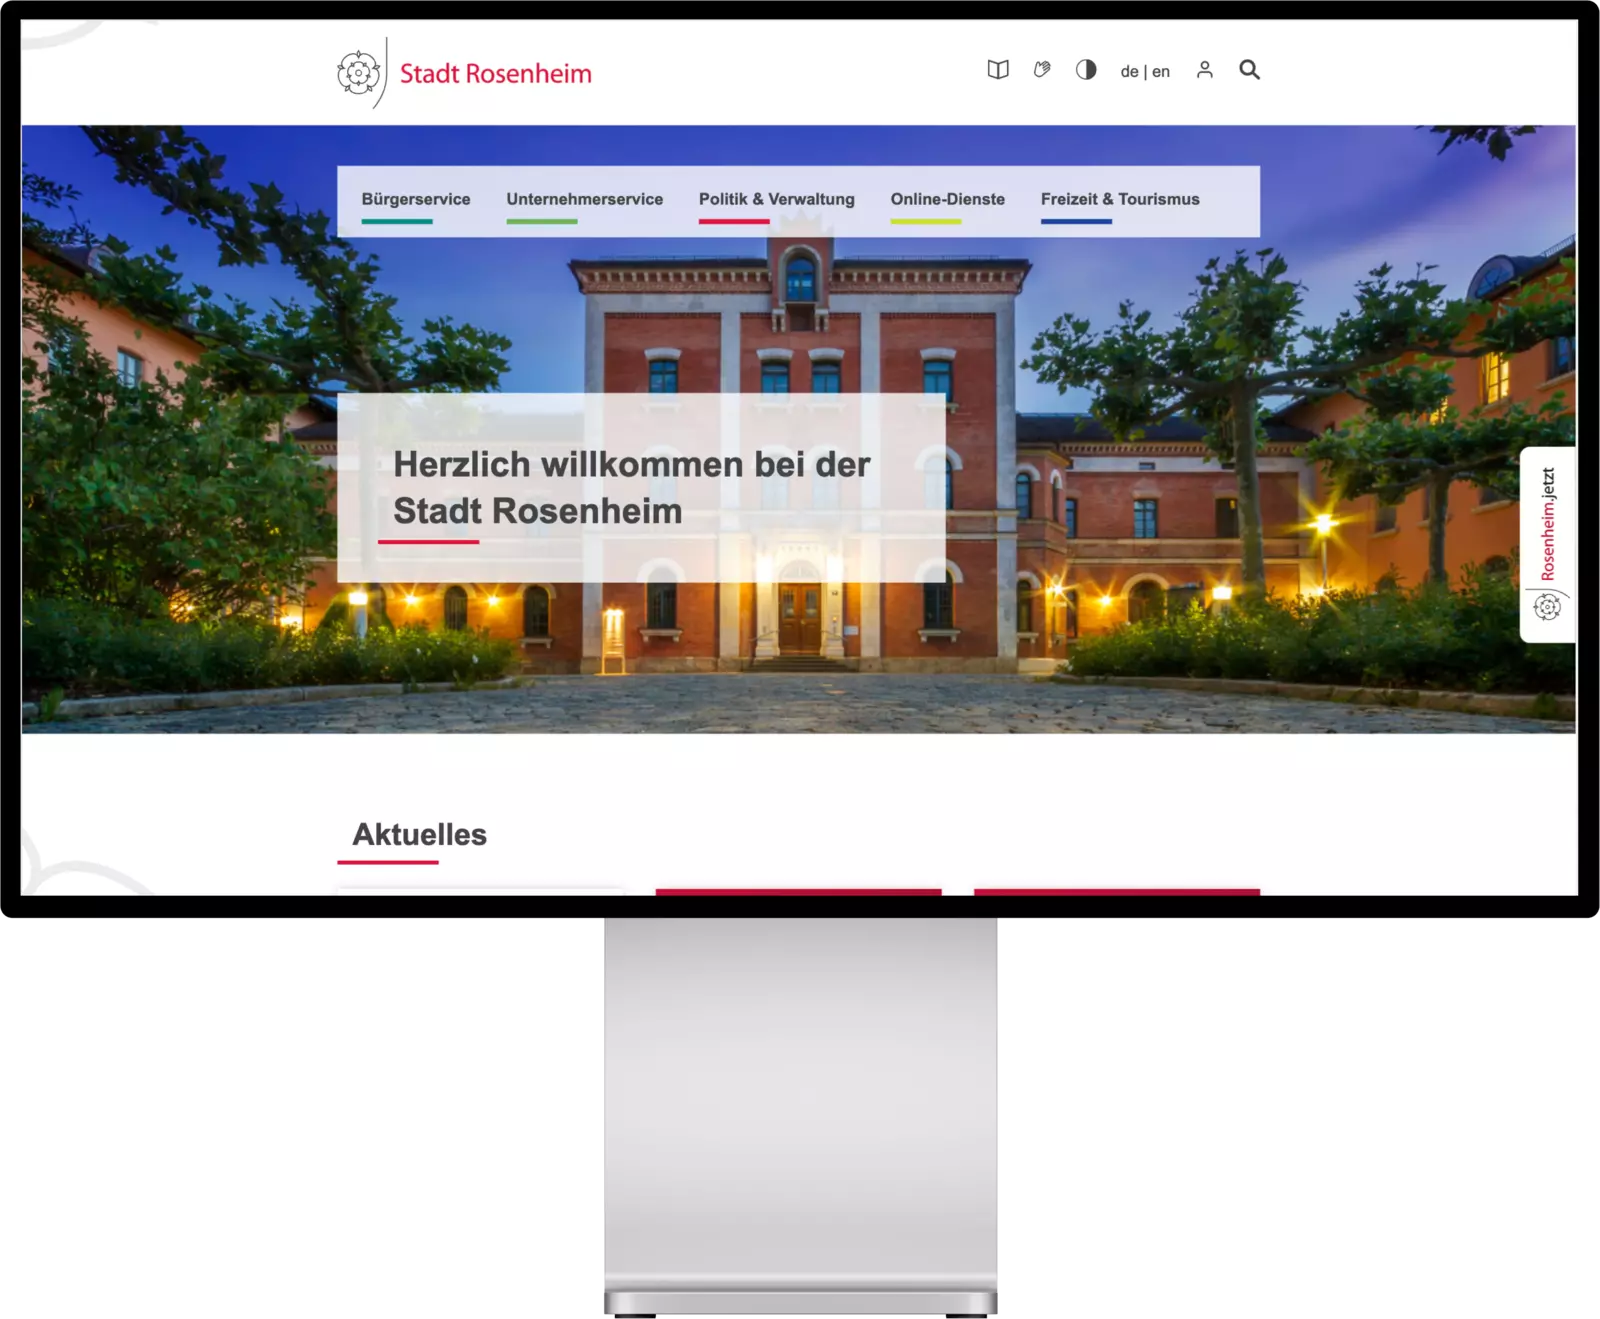 New Website for the Stadt Rosenheim